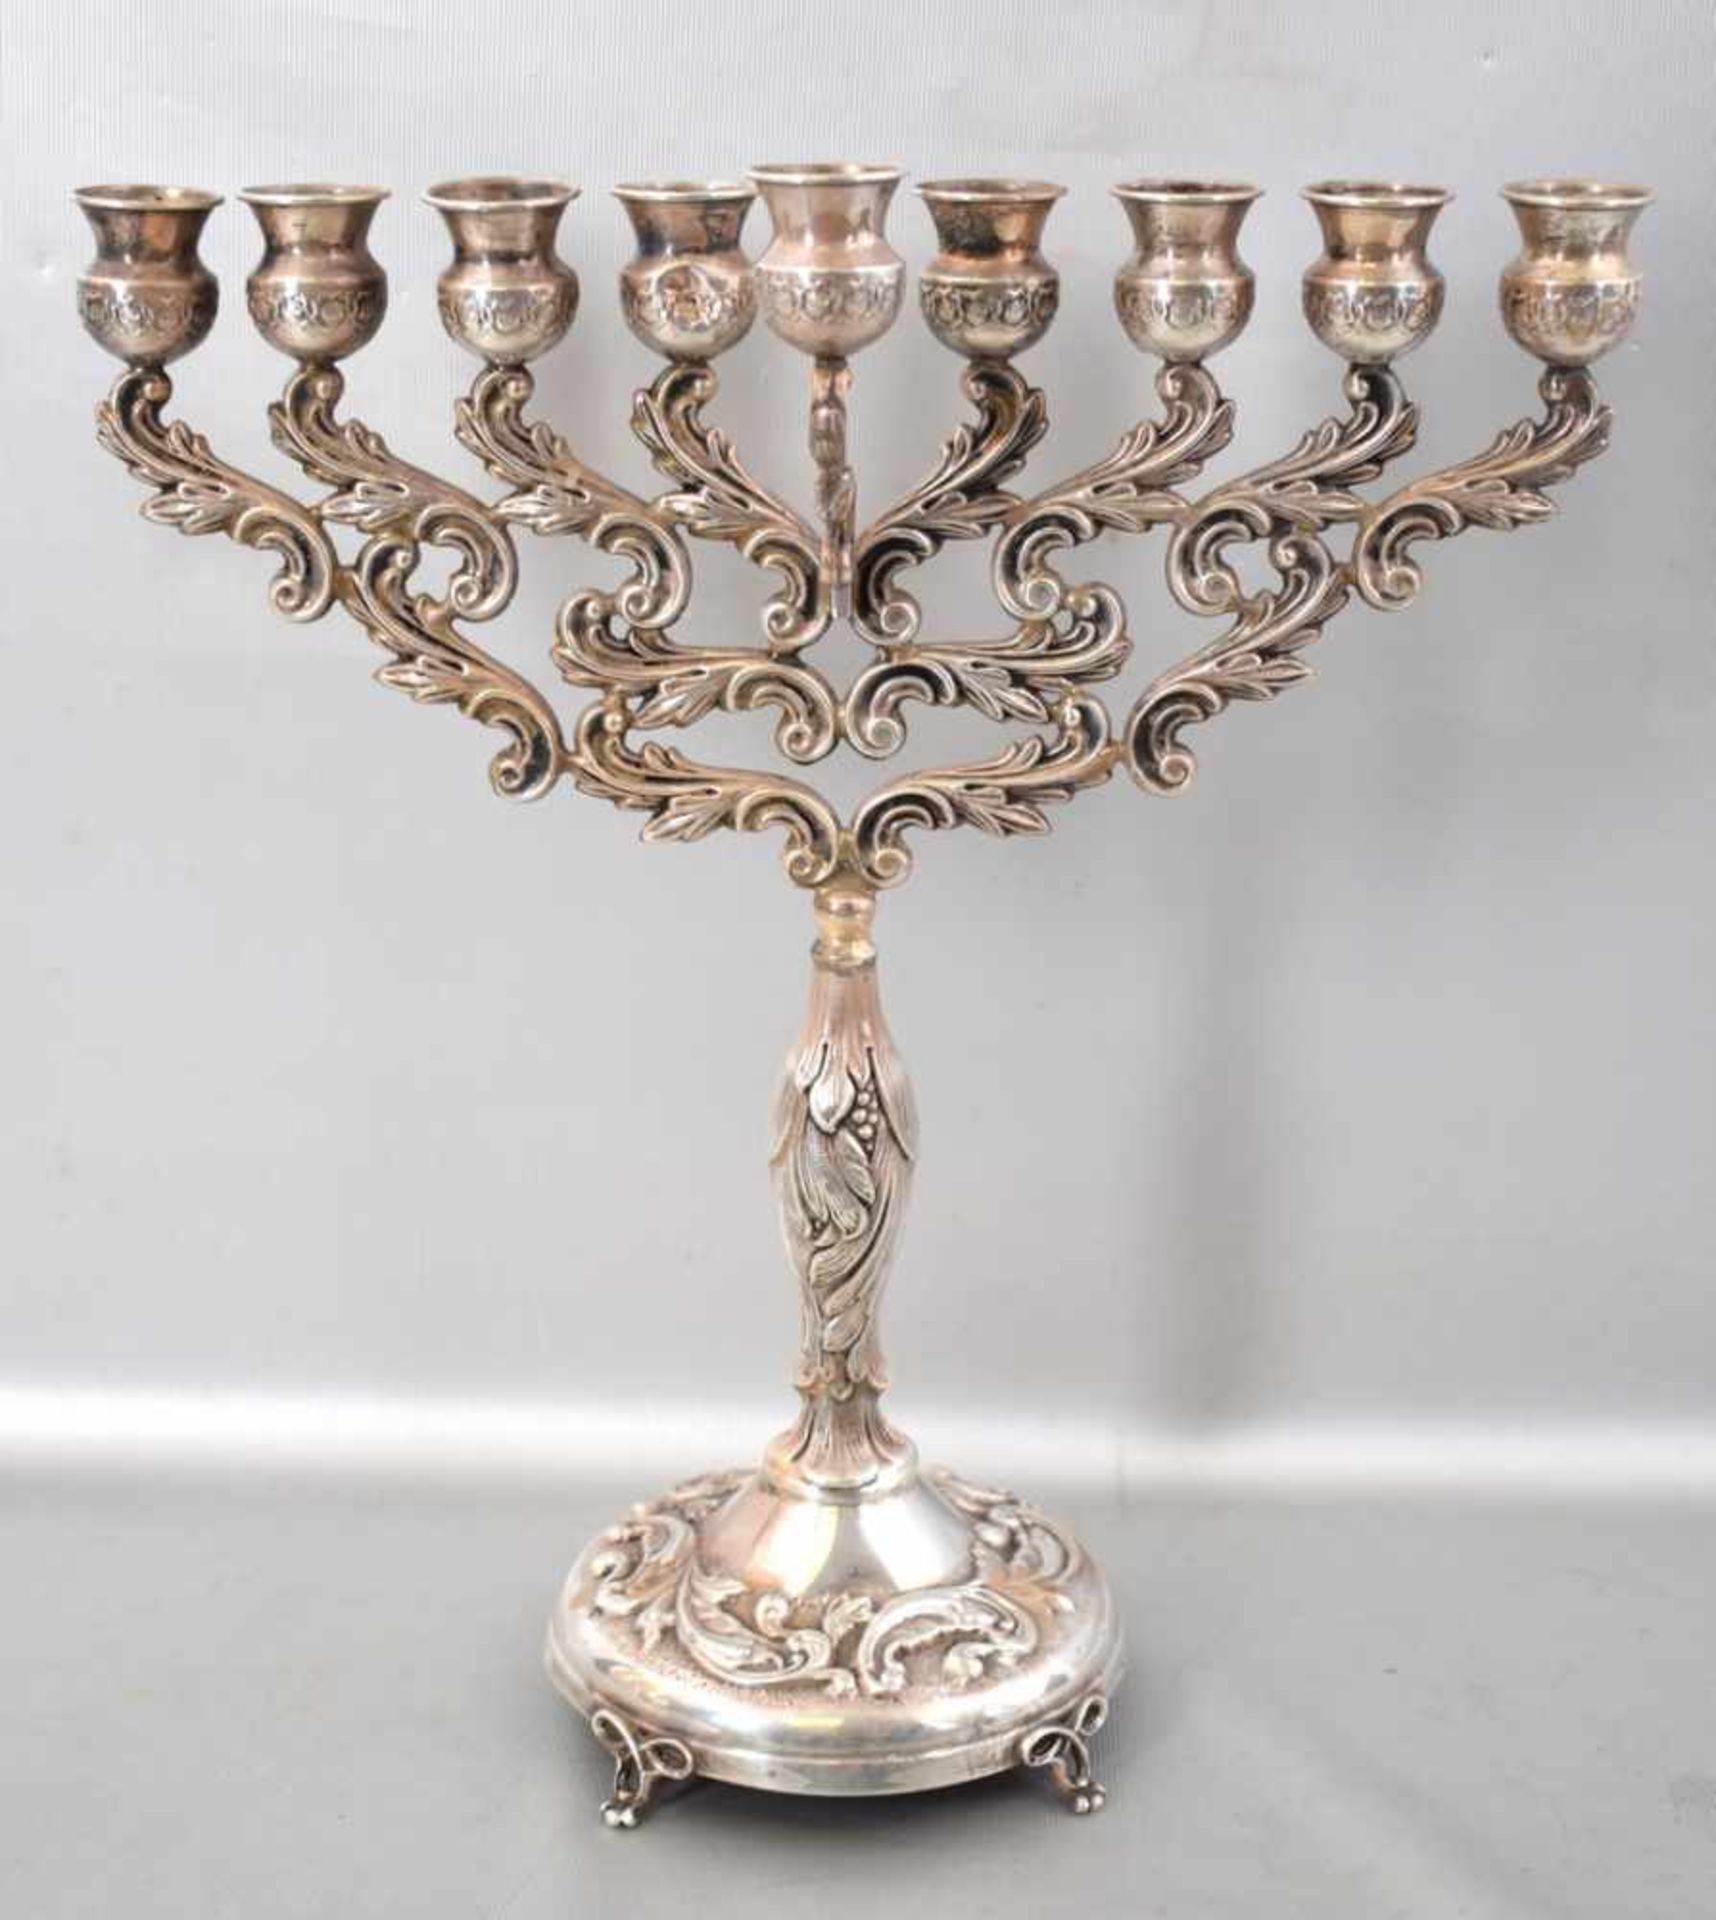 Jüdischer Tischkerzenleuchter 9-lichtig, Chanukka-Leuchter, runder Fuß mit vier verzierten